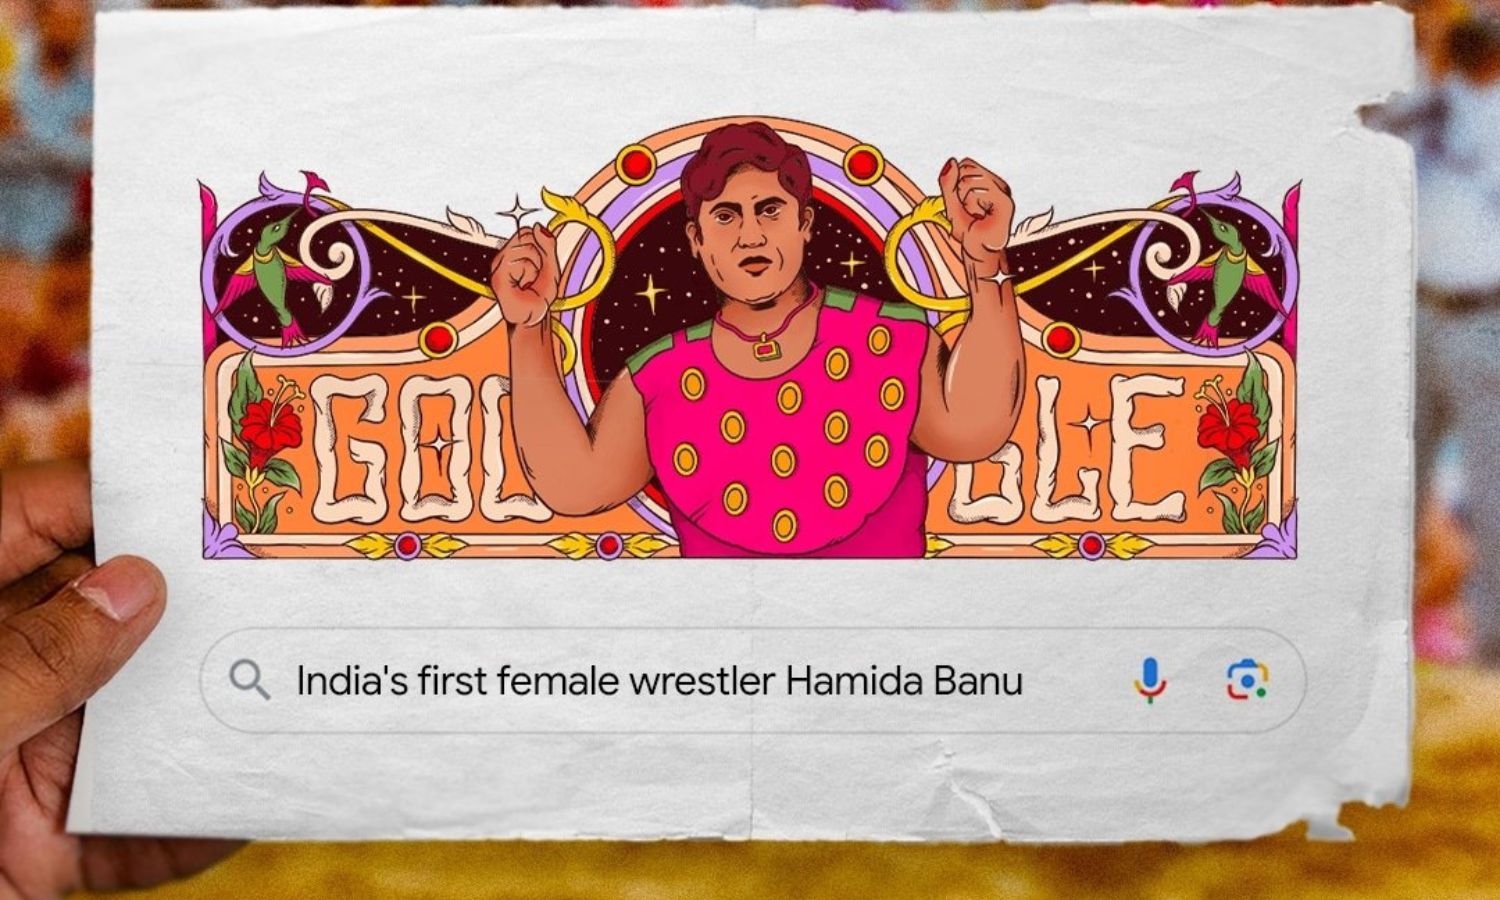 Google Doodle celebrates wrestler Hamida Banu, who is she?